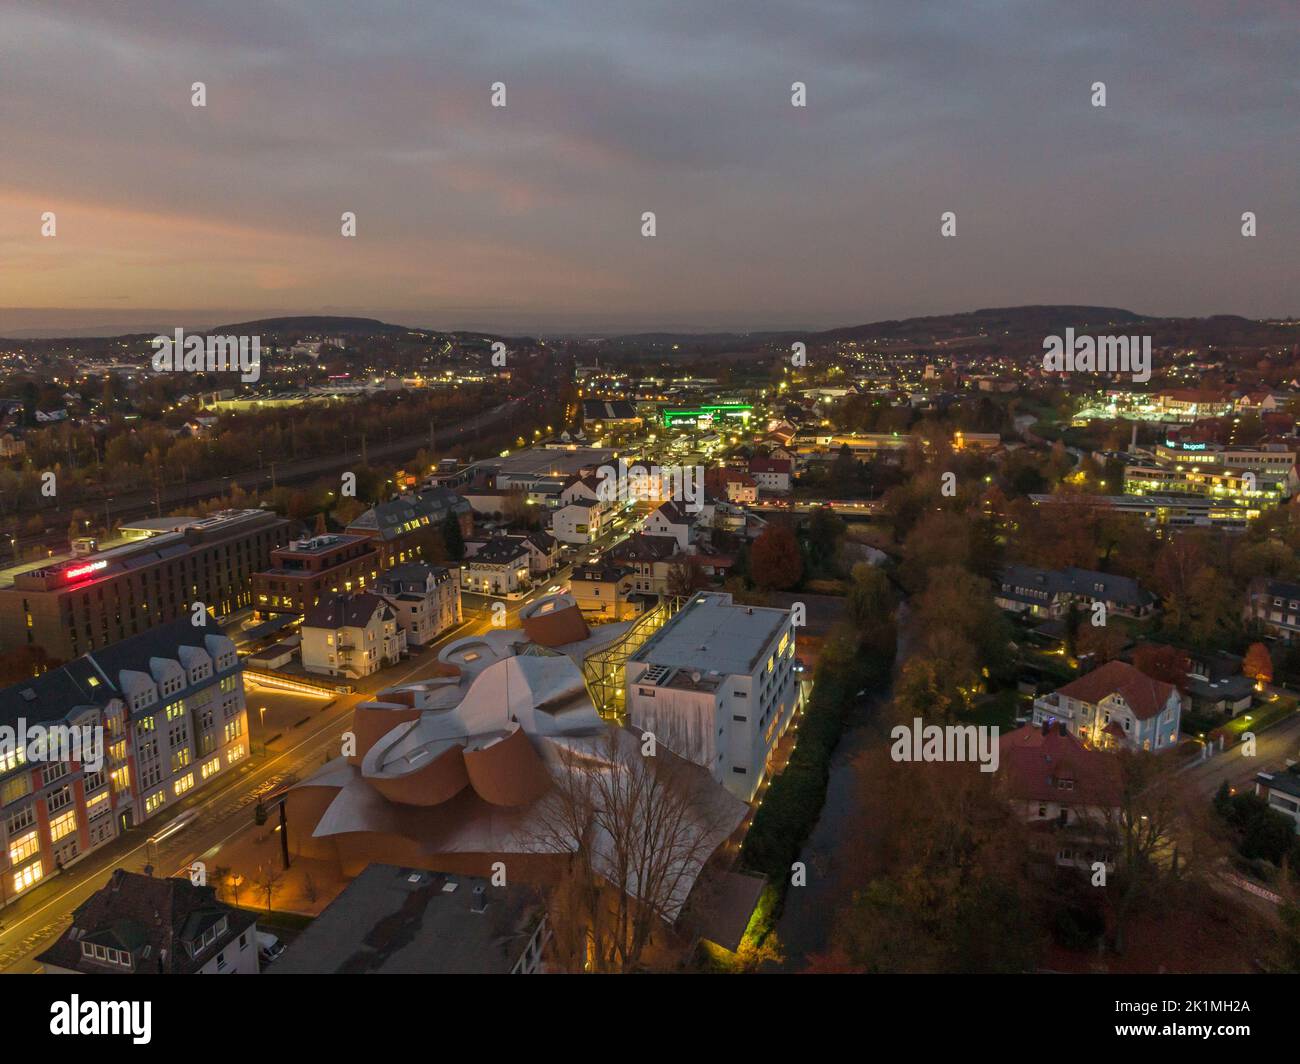 Stadt Herford bei Nacht (Elsbachhaus & Marta Herford) Luftaufnahme / Panoramaansicht Foto de stock